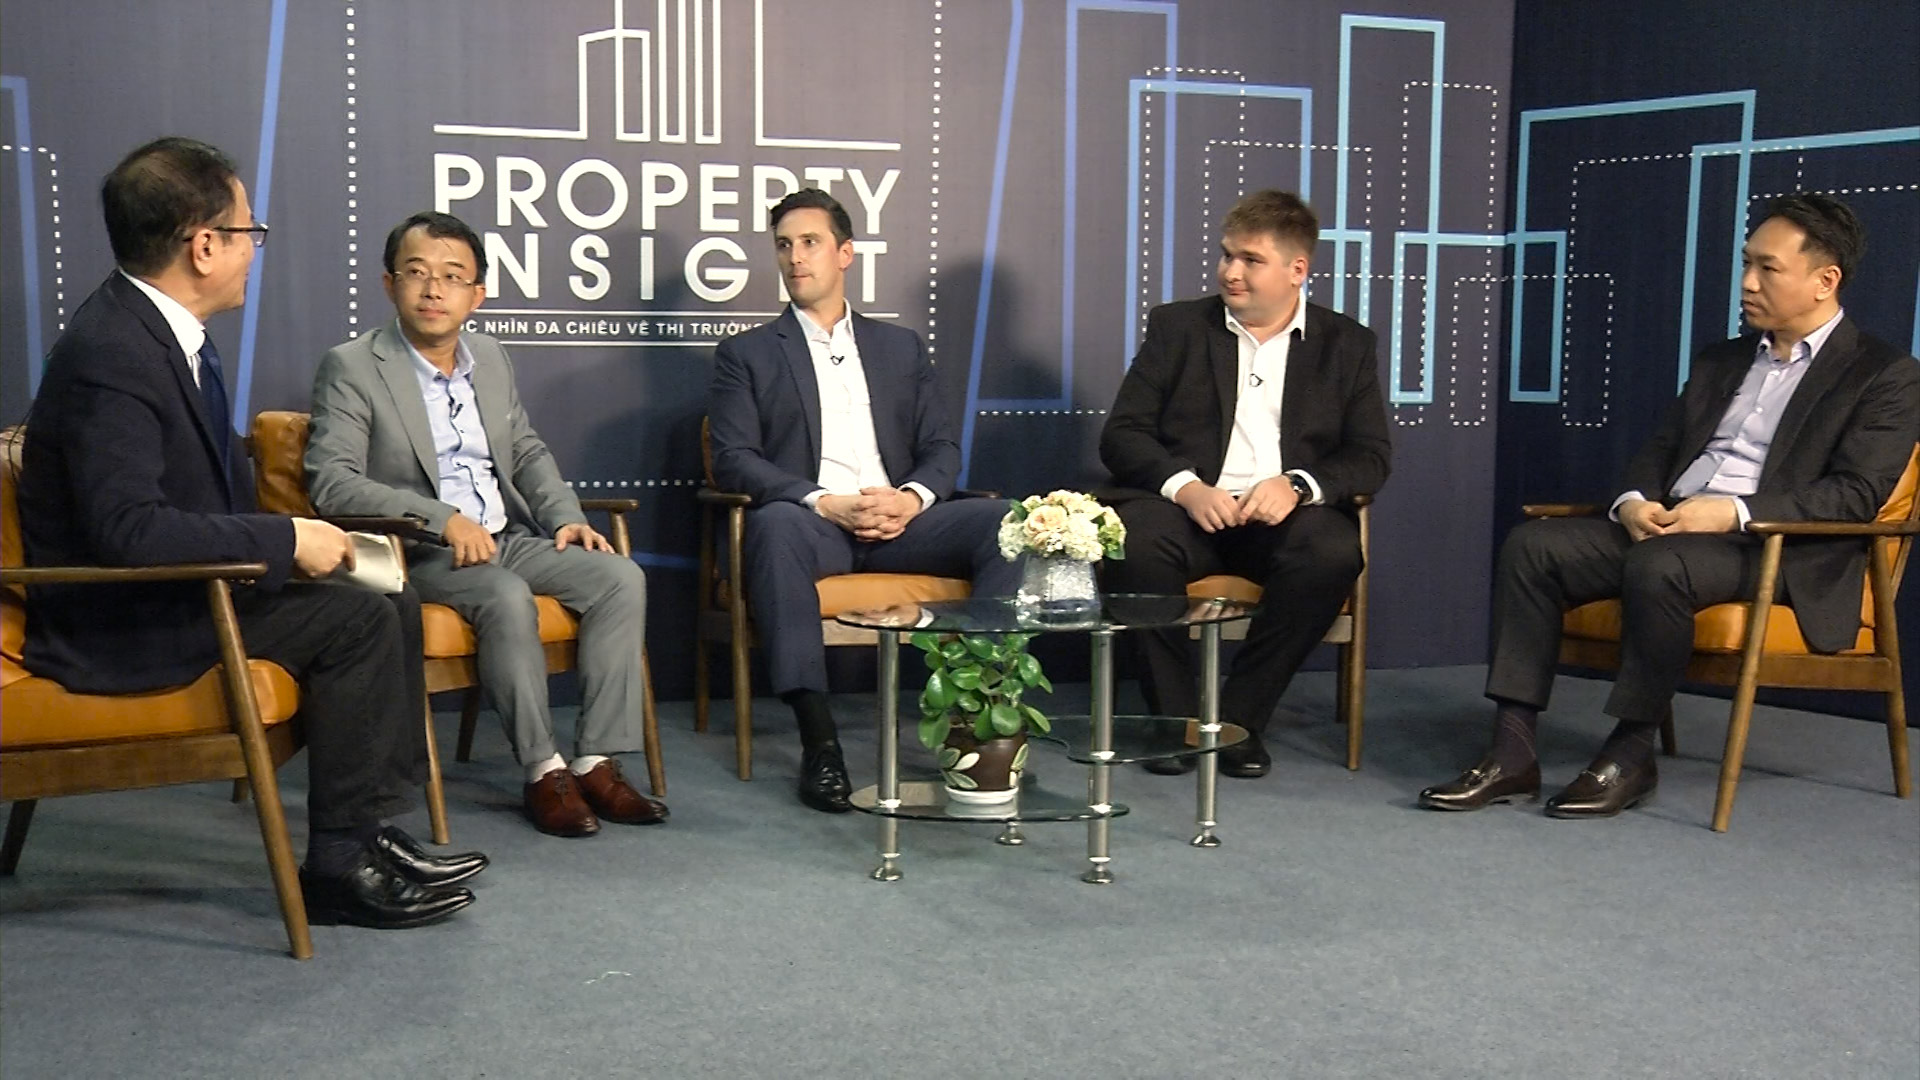 Tiến sĩ Kavalchuk (thứ hai từ phải sang) thảo luận về nhà thông minh với bốn chuyên gia khác từ lĩnh vực kinh tế và phát triển bất động sản.